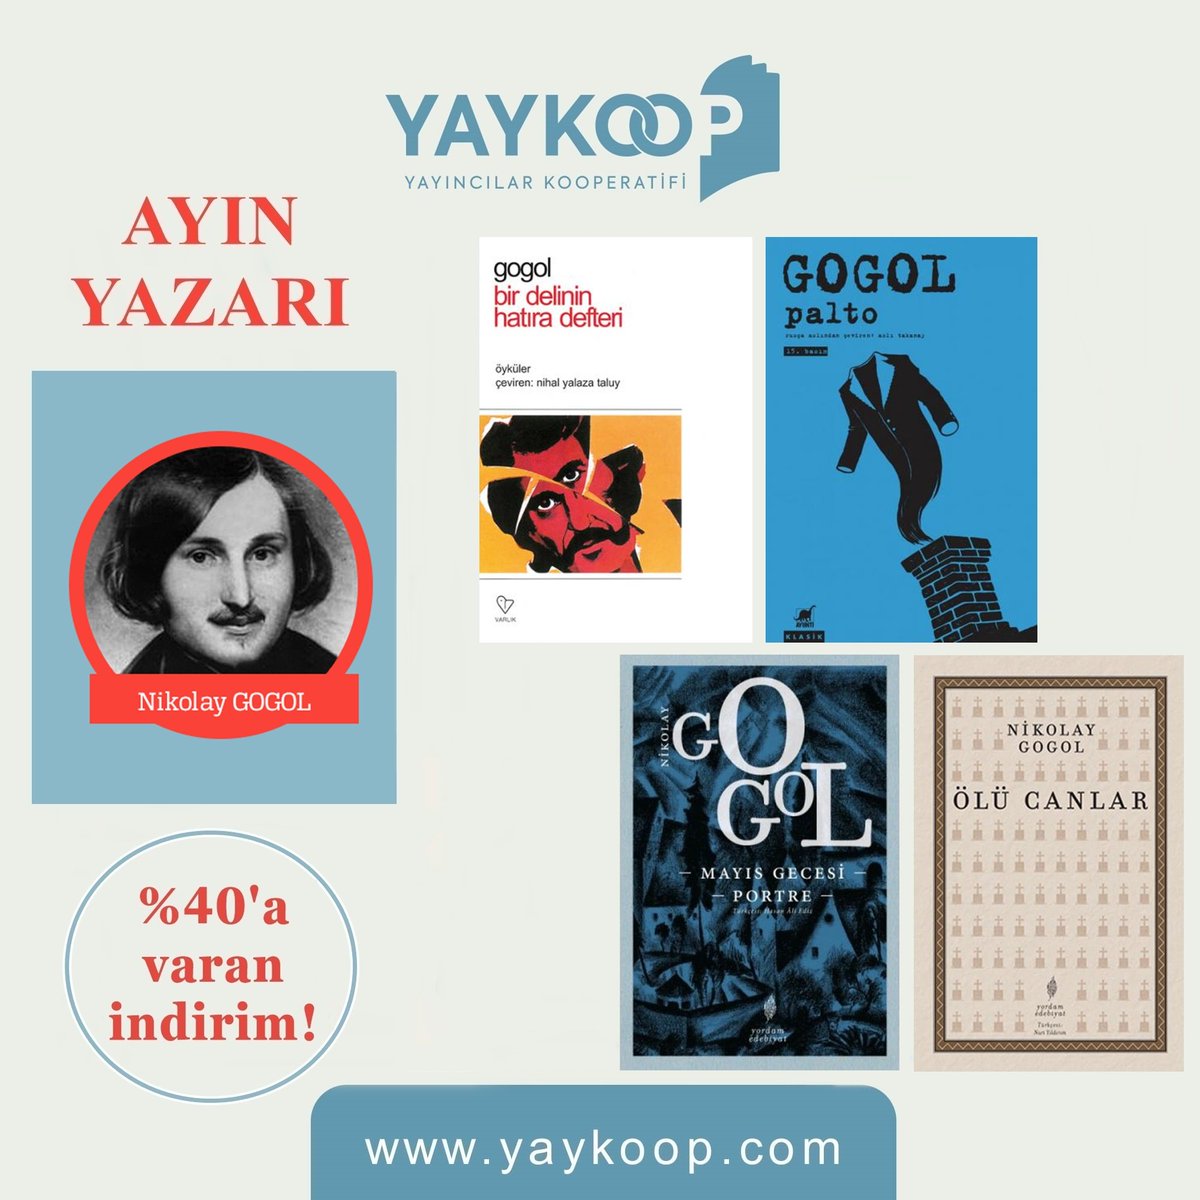 Rus edebiyatının ilk büyük roman, öykü ve tiyatro yazarı Gogol'un bütün eserlerini ay boyunca yaykoop.com'dan %40'a varan indirimlerle edinebilirsiniz! yaykoop.com/nikolay-gogol @ayrintiyayinevi @YordamEdebiyat @varlikyayinlari